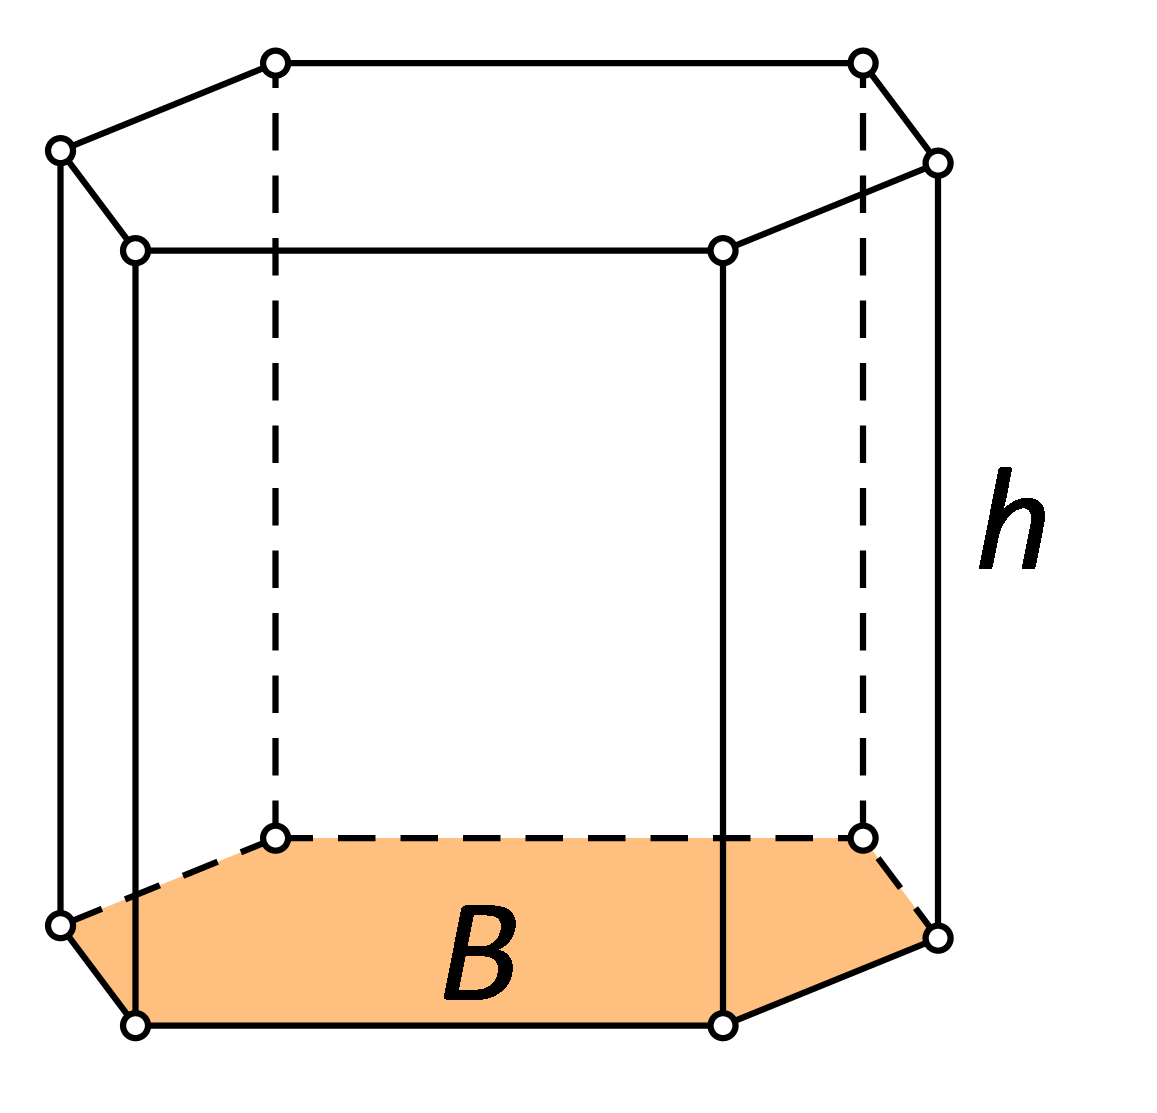 Slika prikazuje pravilnu šesterostranu prizmu s osjenčanom bazom i istaknutom visinom h.